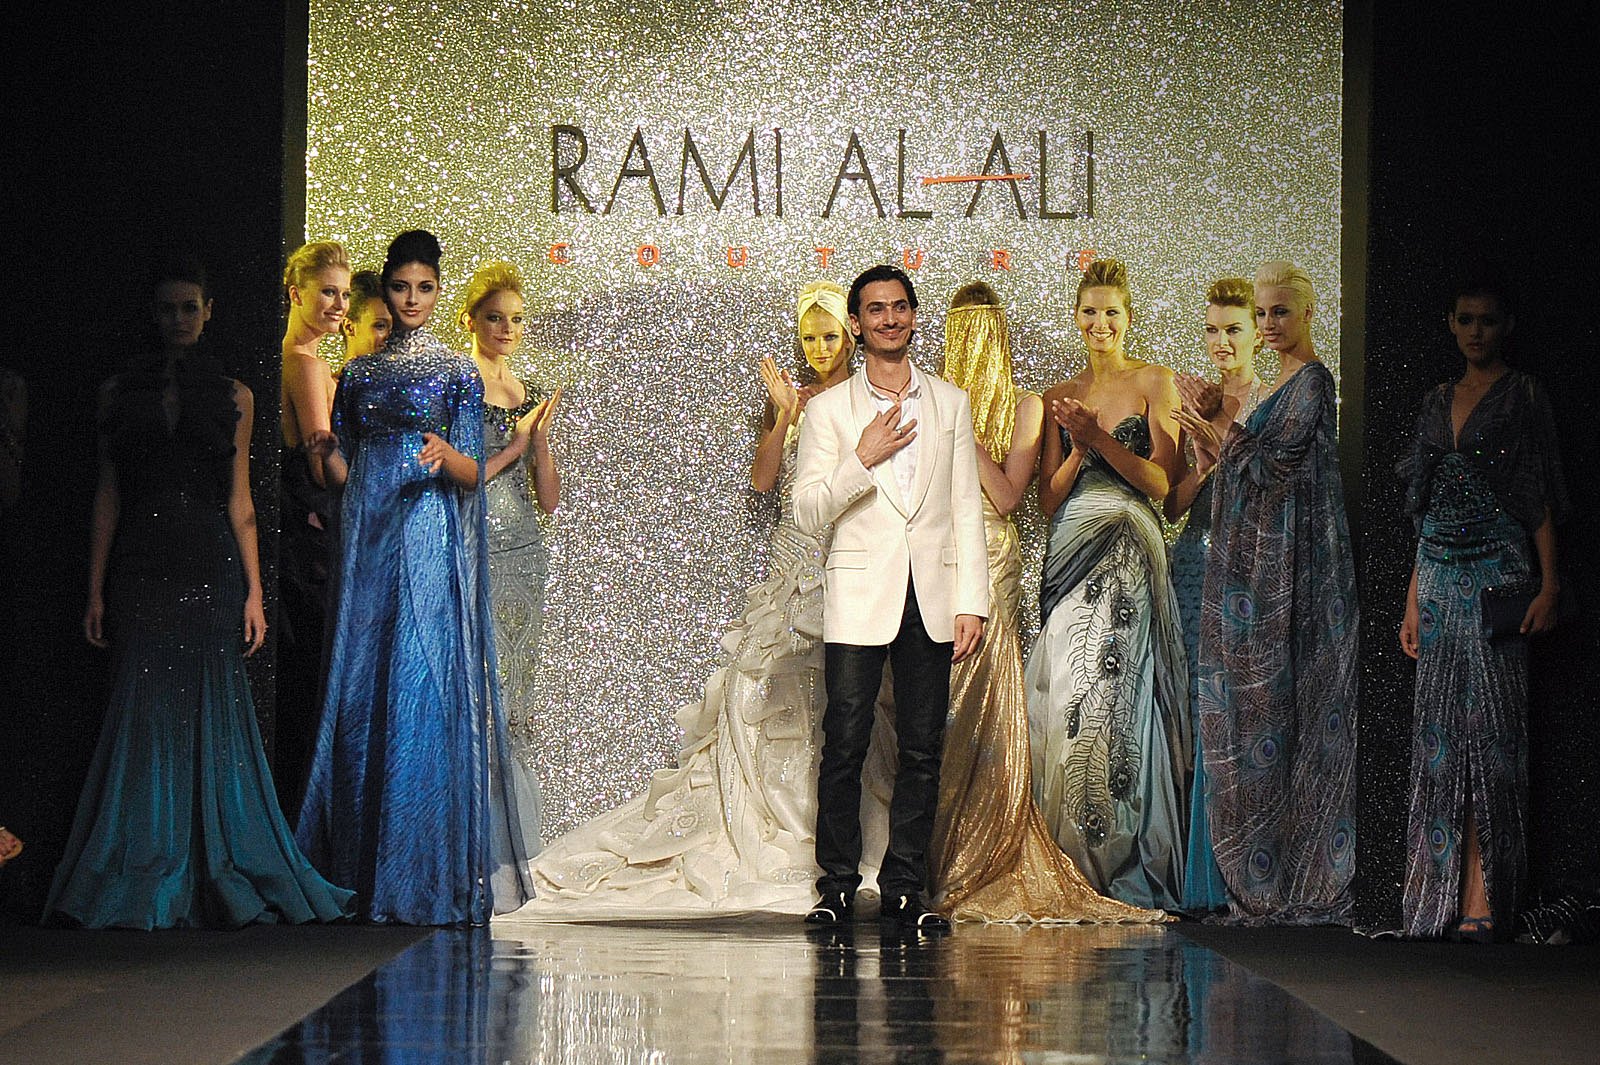 Rami Al-Ali “The Peacock in you”, Φ/Χ 2009-2010 - Υψηλή ραπτική - 1